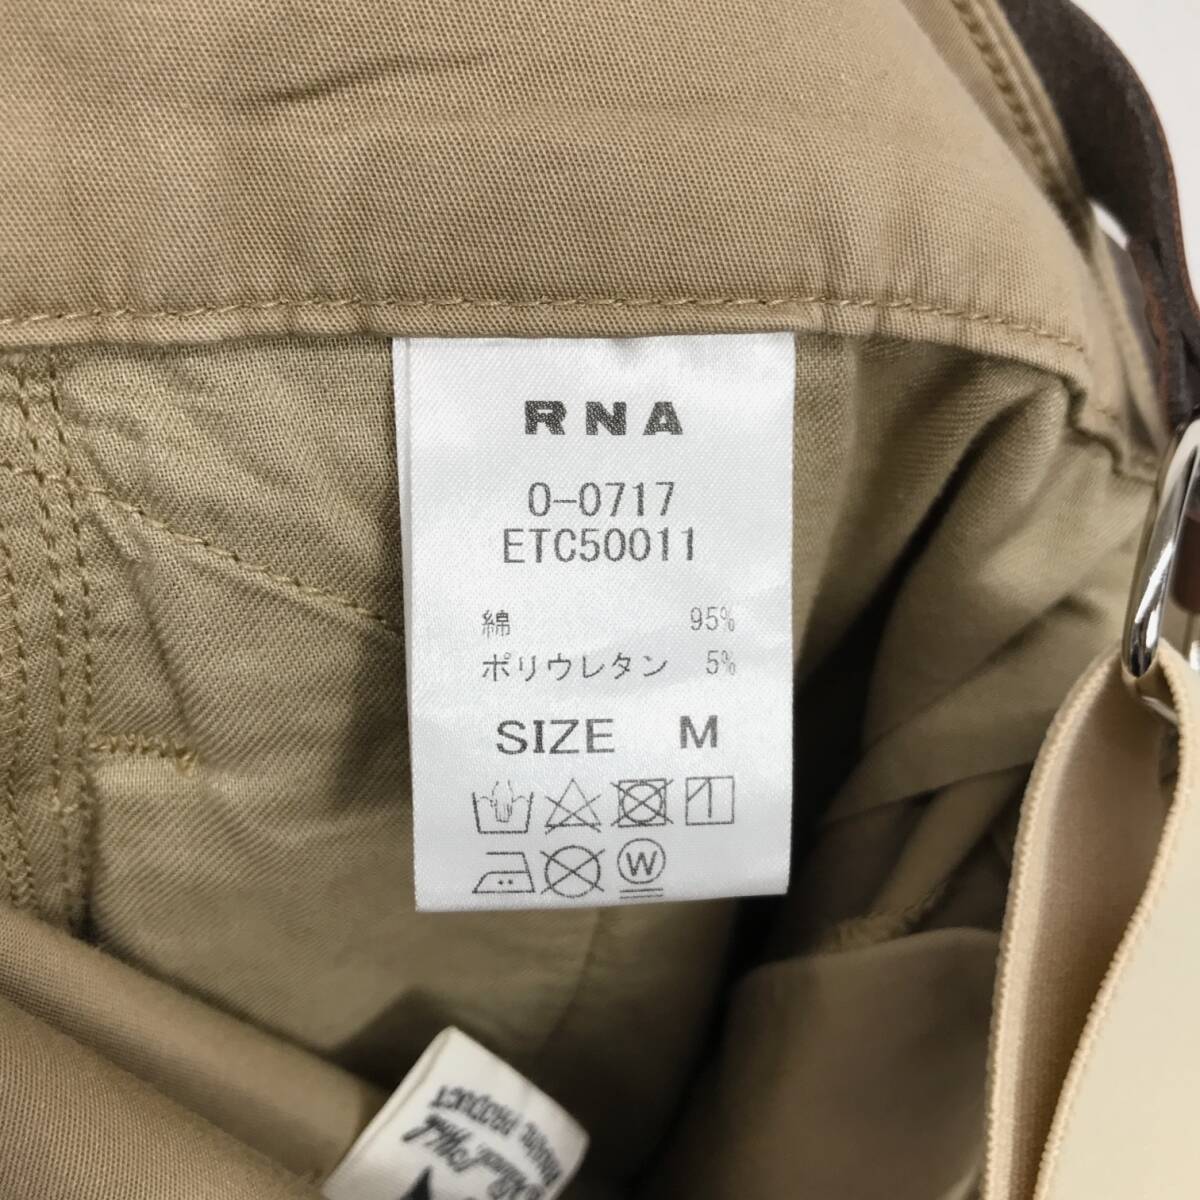 NZ693*24SS RNA-N light tiger u The - suspenders pants *M* beige a-ruene-enO-0717 regular price Y19,800-